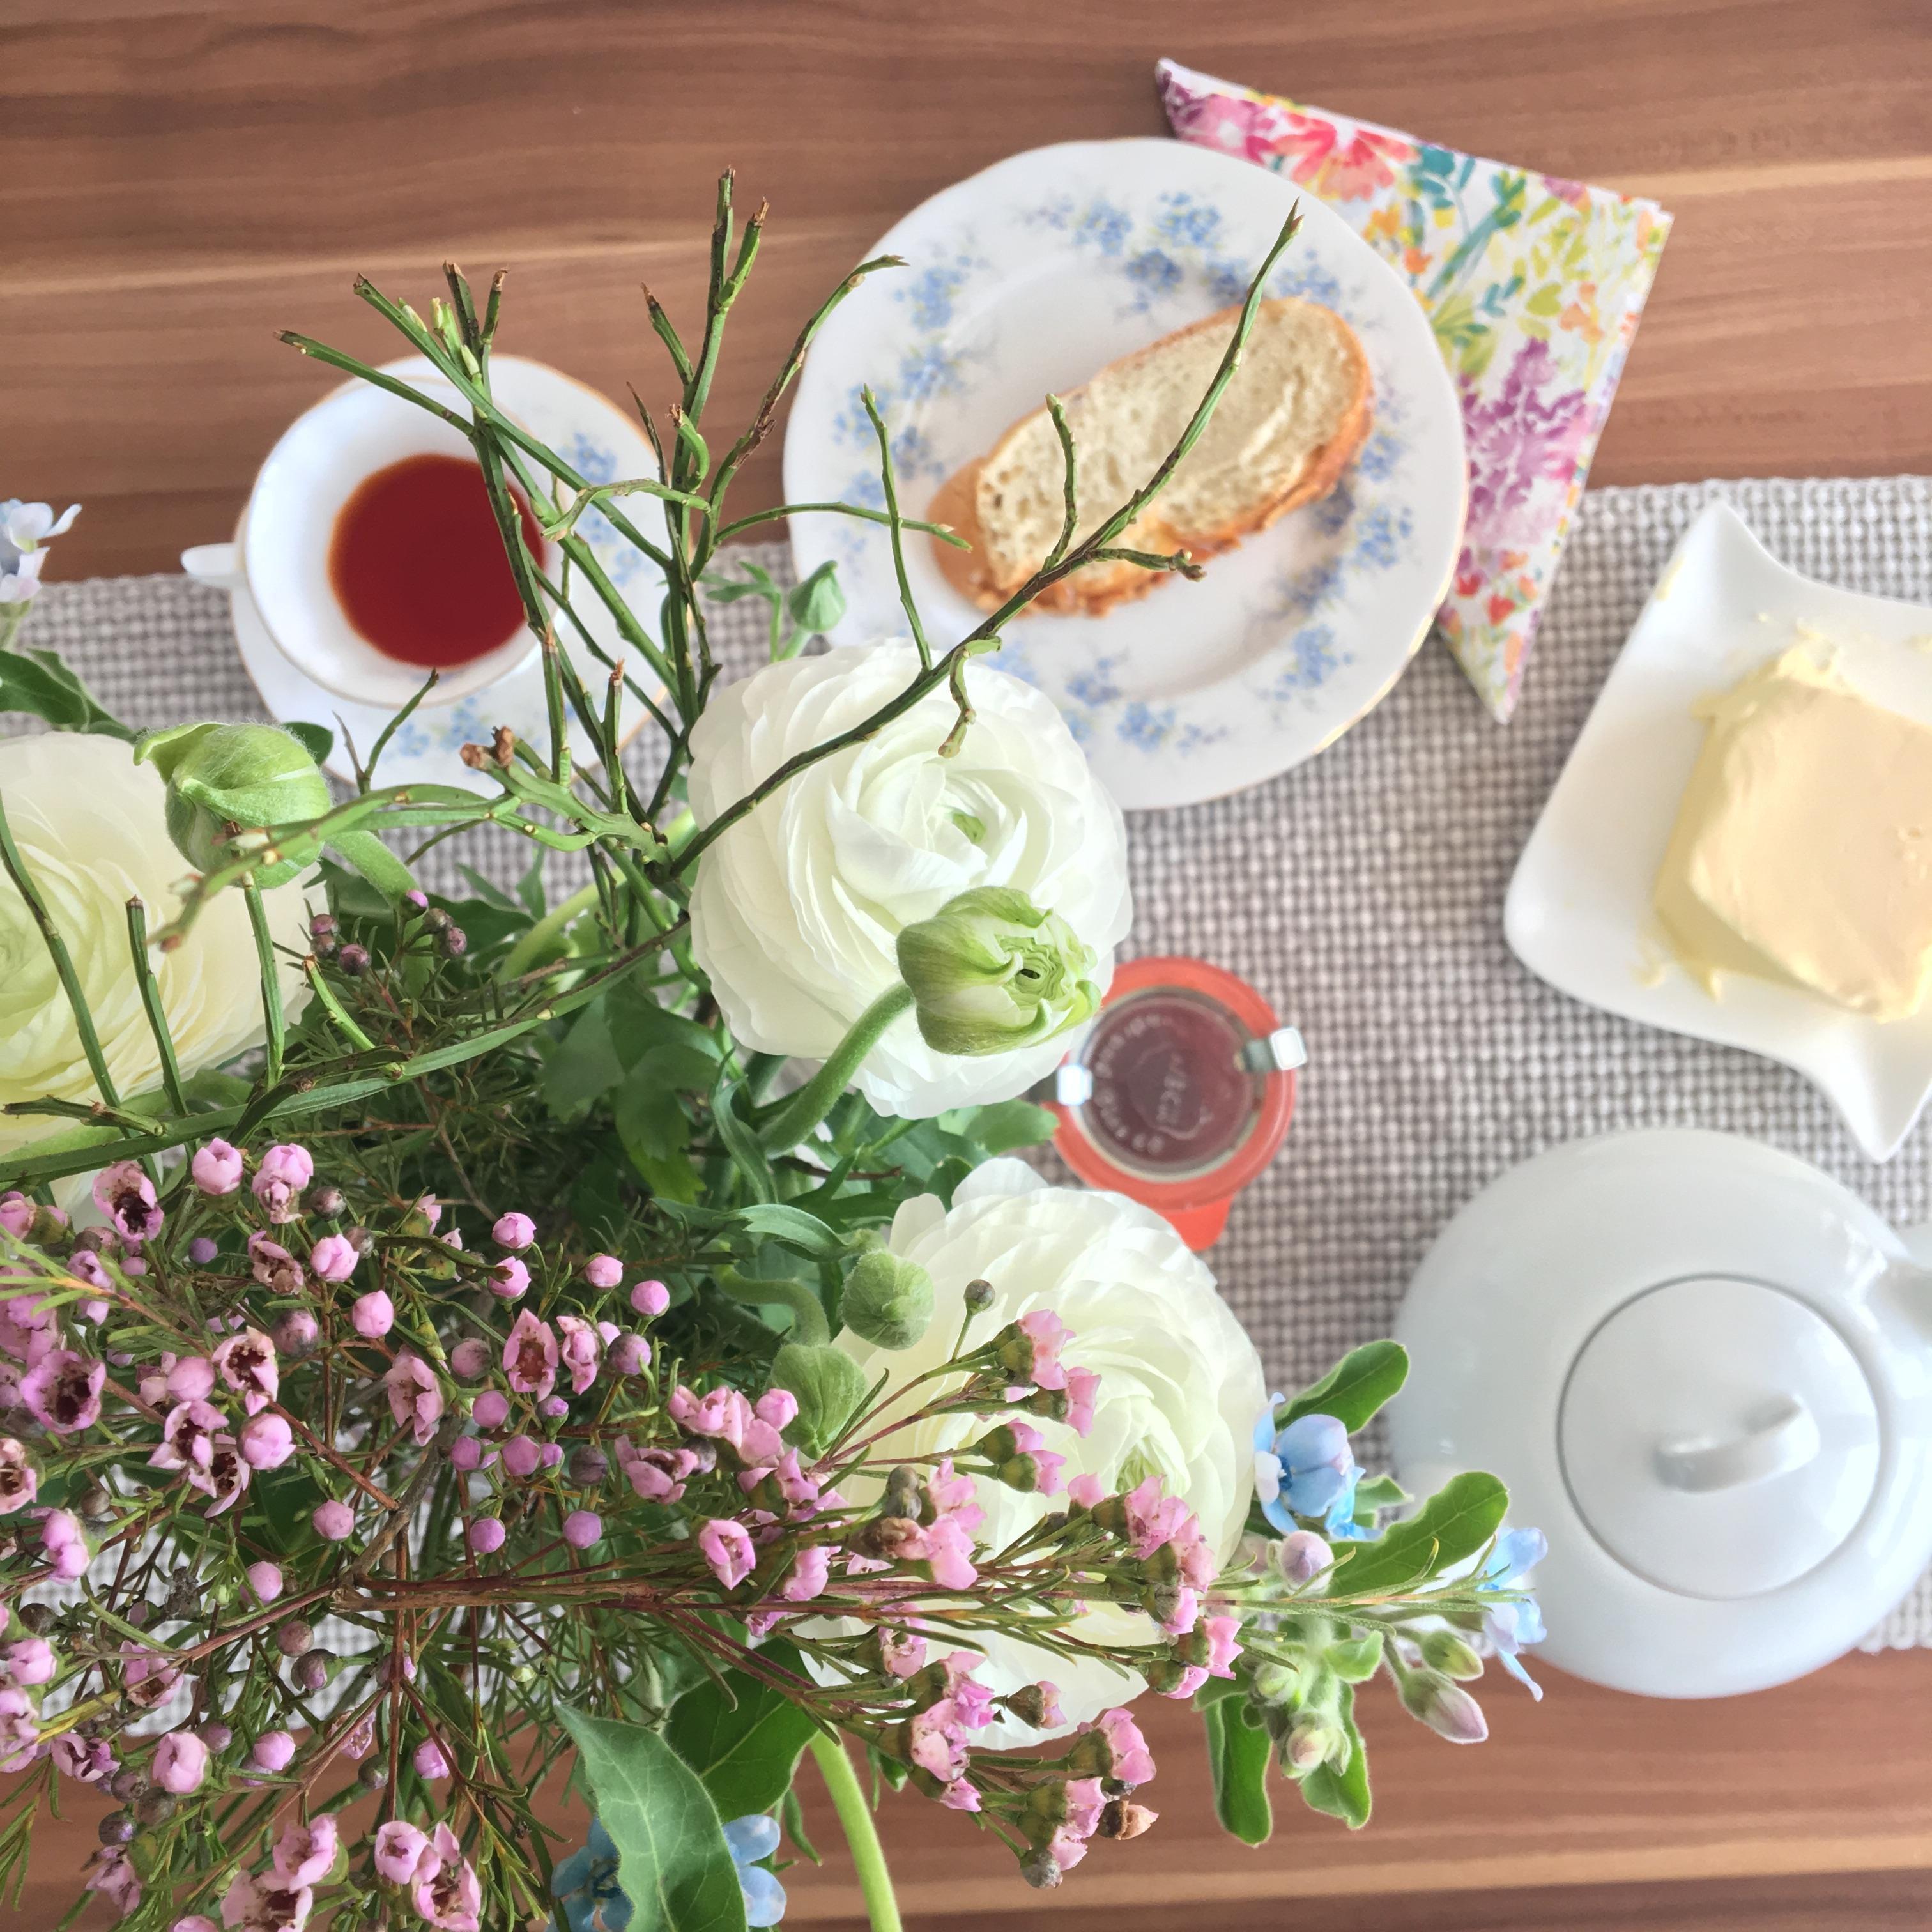 Der perfekte Start in den Tag 🤗
#sommerlieblinge #frühstückstisch #table #blumenstrauß #freshflowers